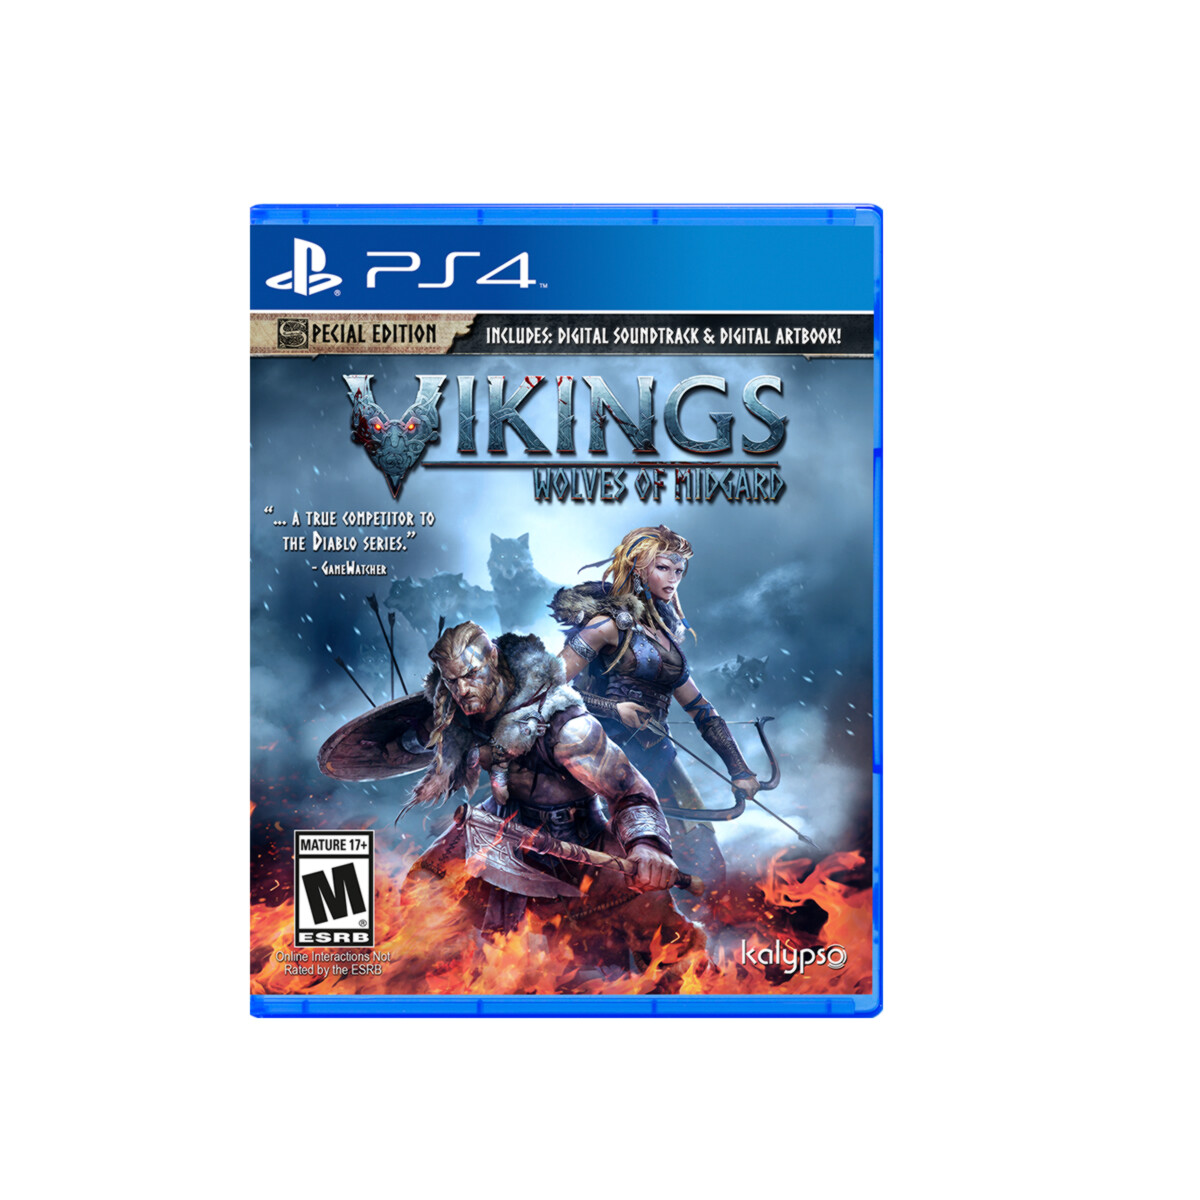 PS4 Vikings Wolves Of Midgard 